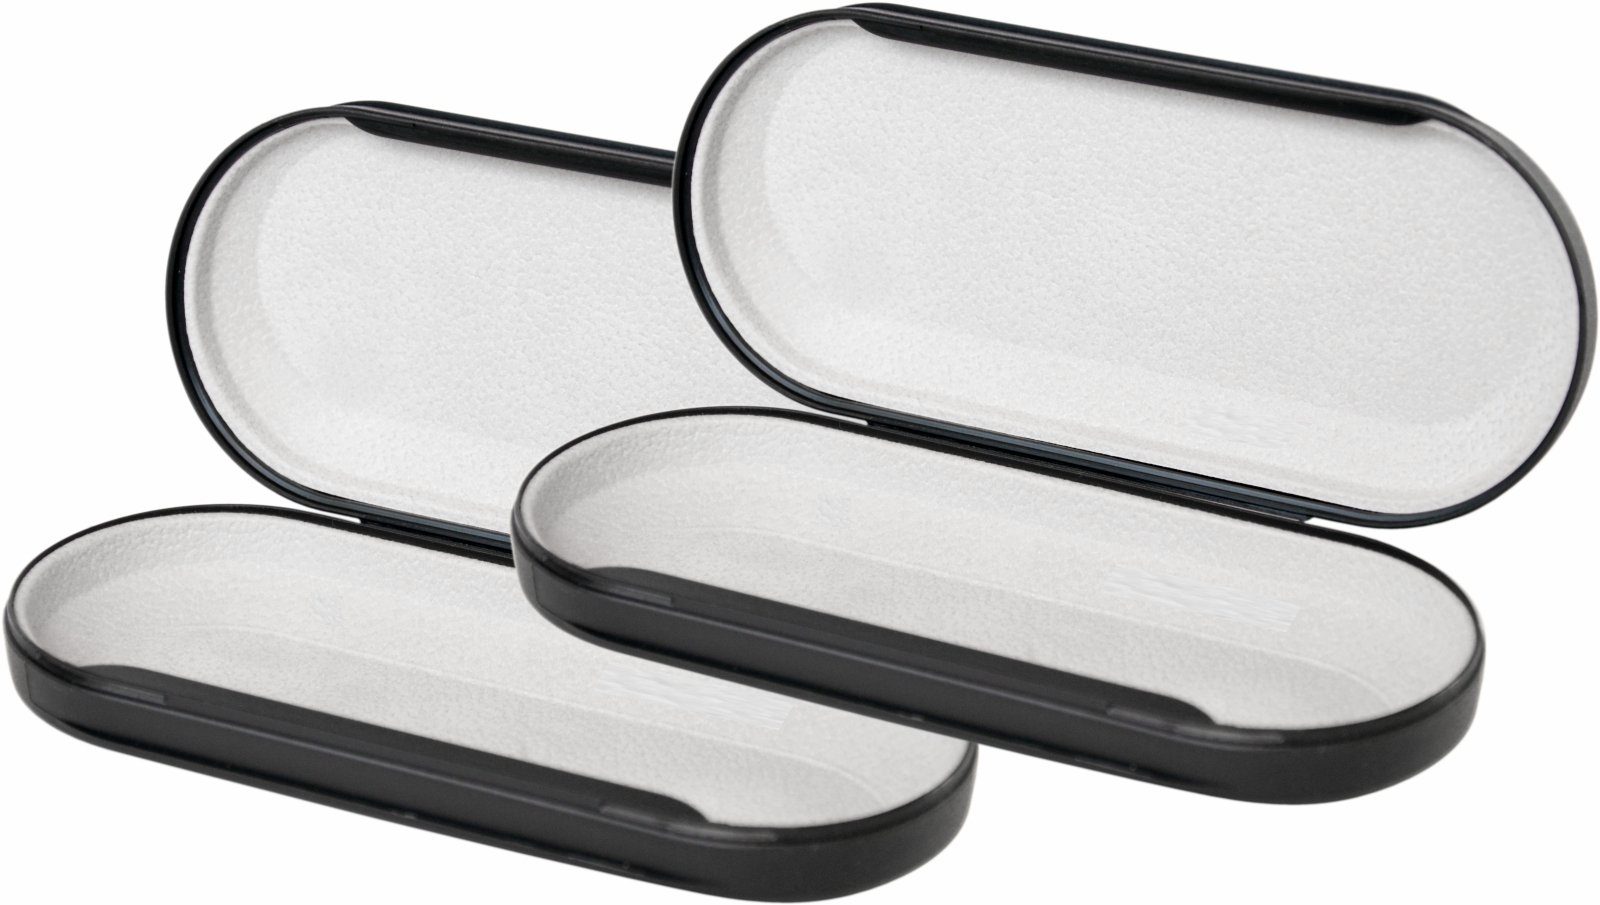 HR Autocomfort Brillenetui Gepolsterte Ablage Brillenhalter für PKW KFZ LKW Auto  Brillenablage